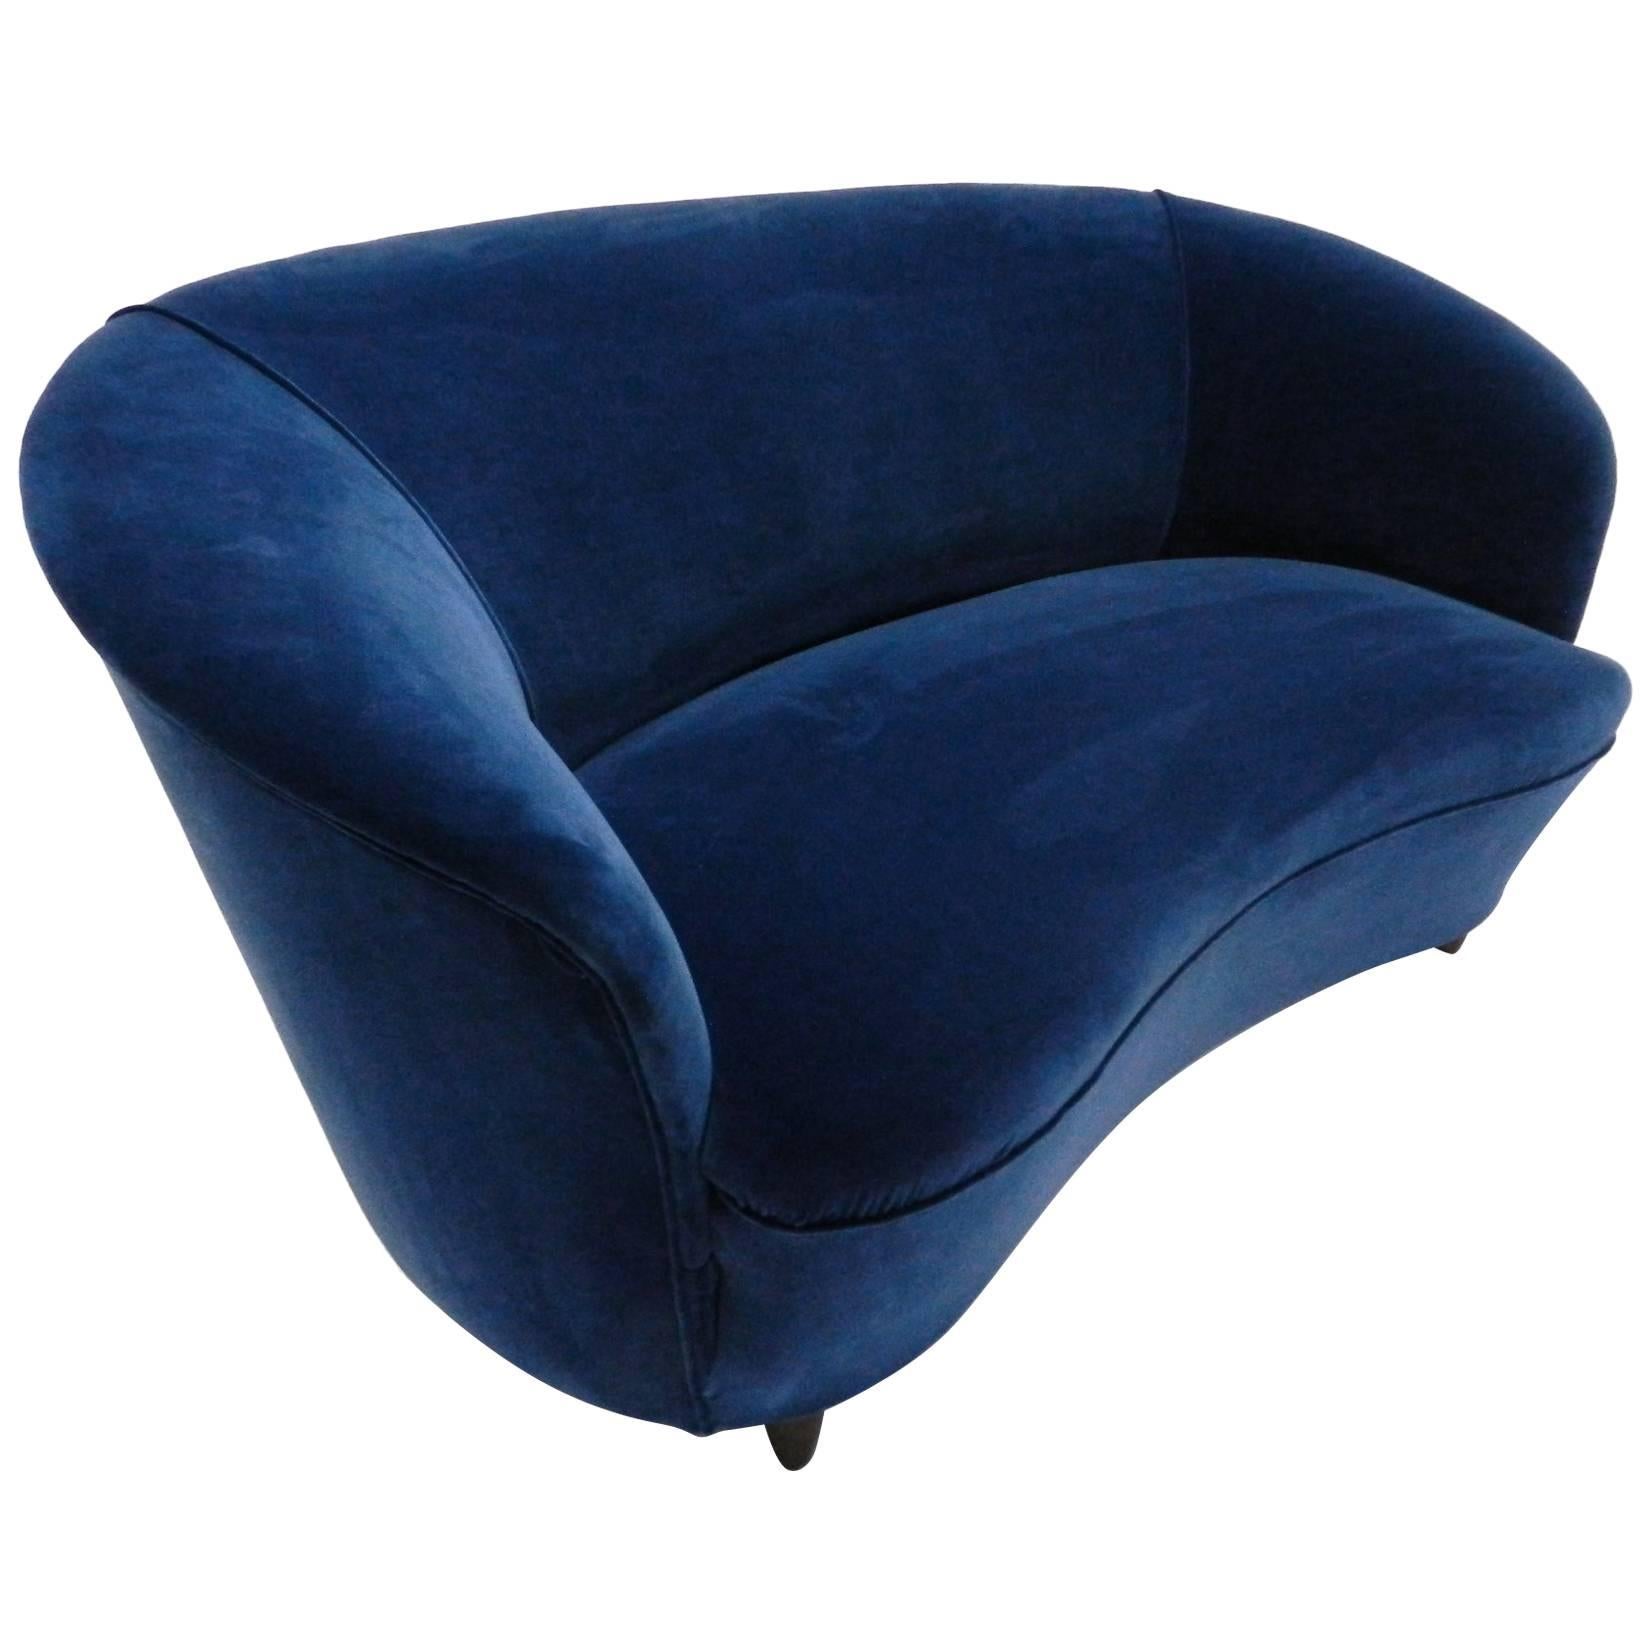 Blue Velvet Lovely Curved Sofa